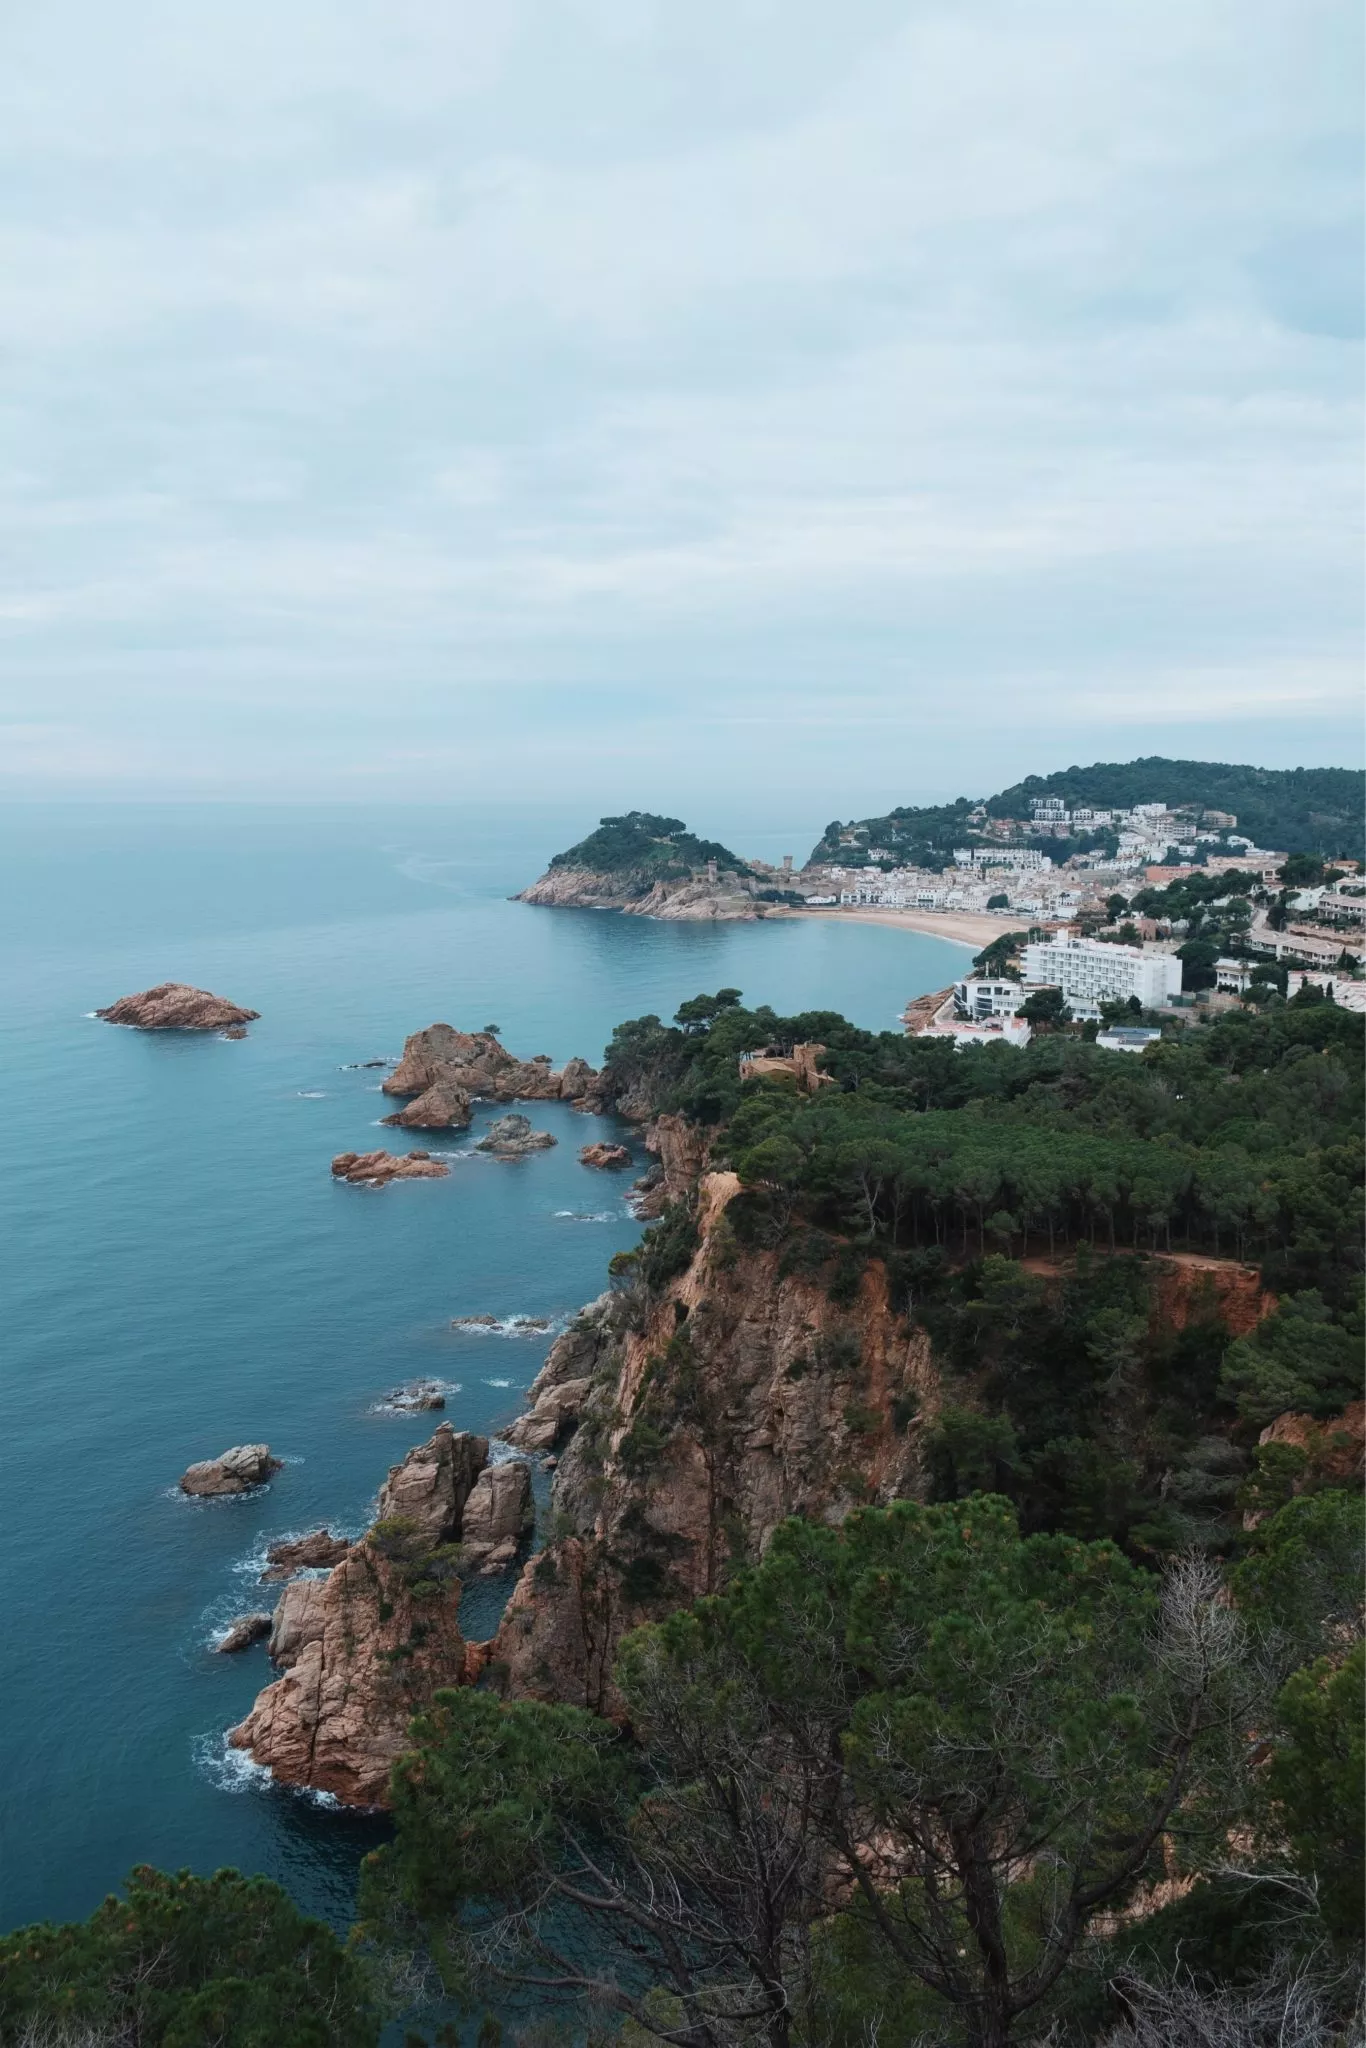 Catalonia's coast